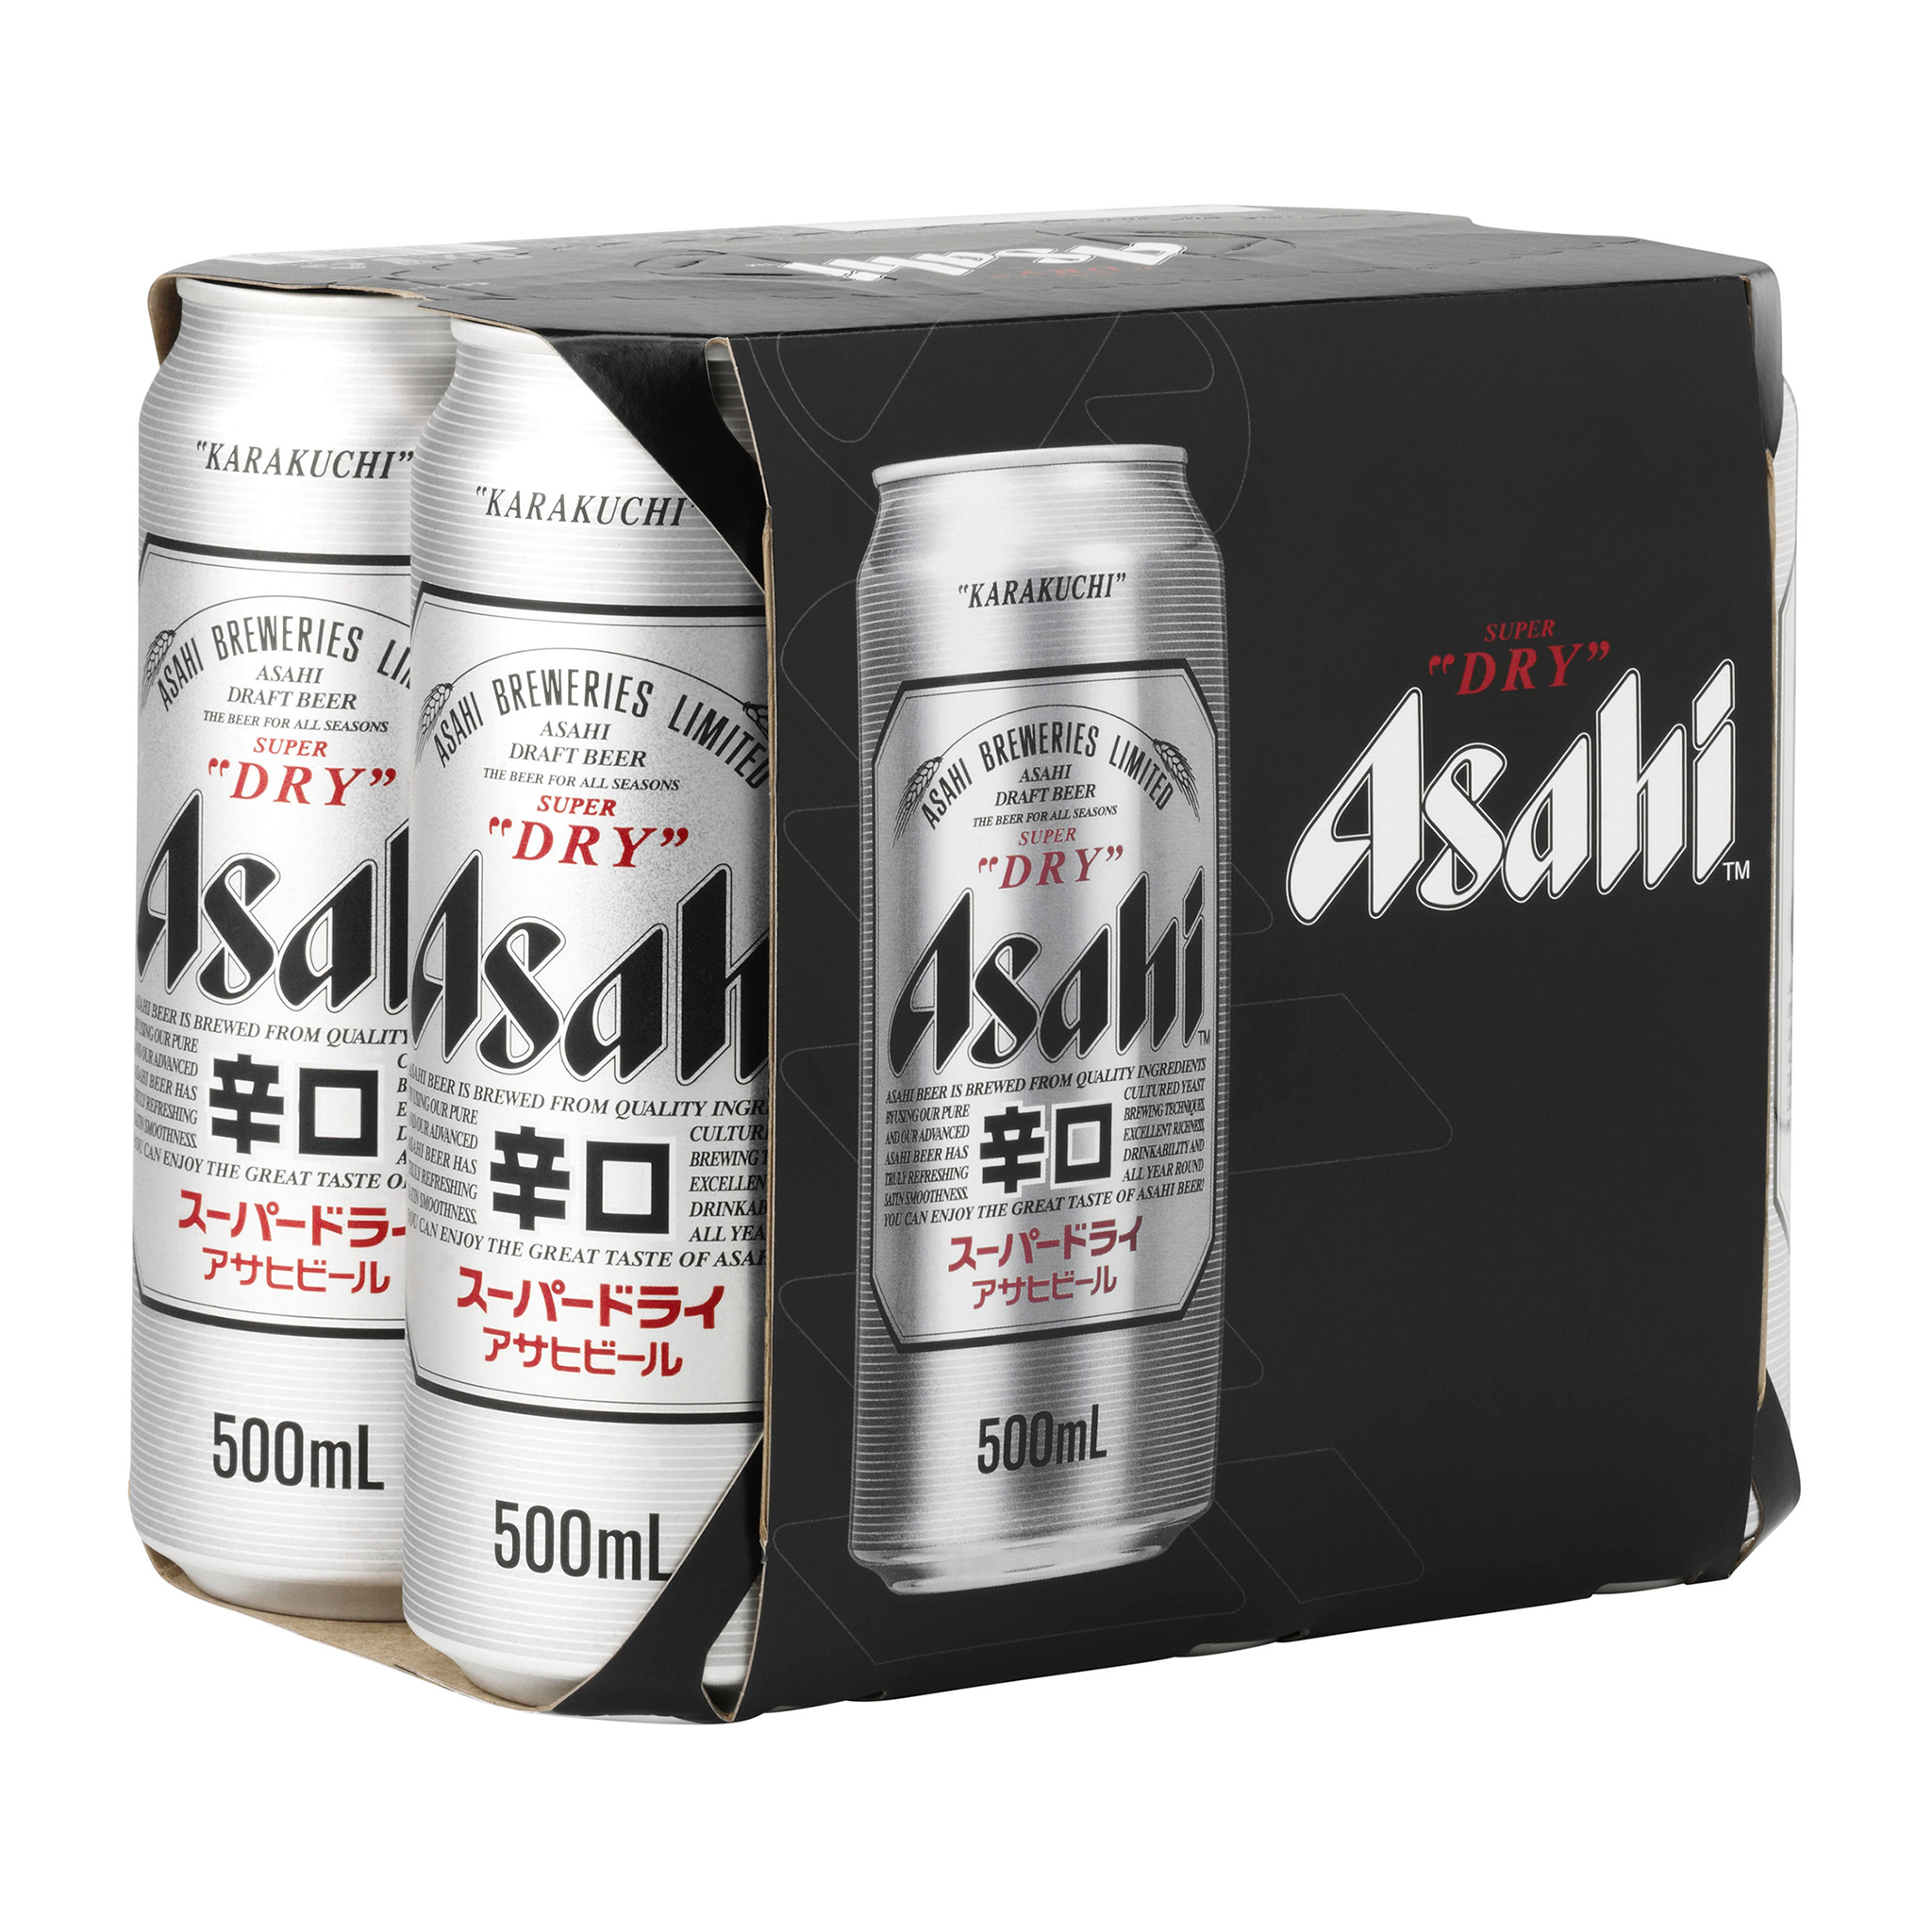 Asahi Super Dry 500ml (6 Pack)